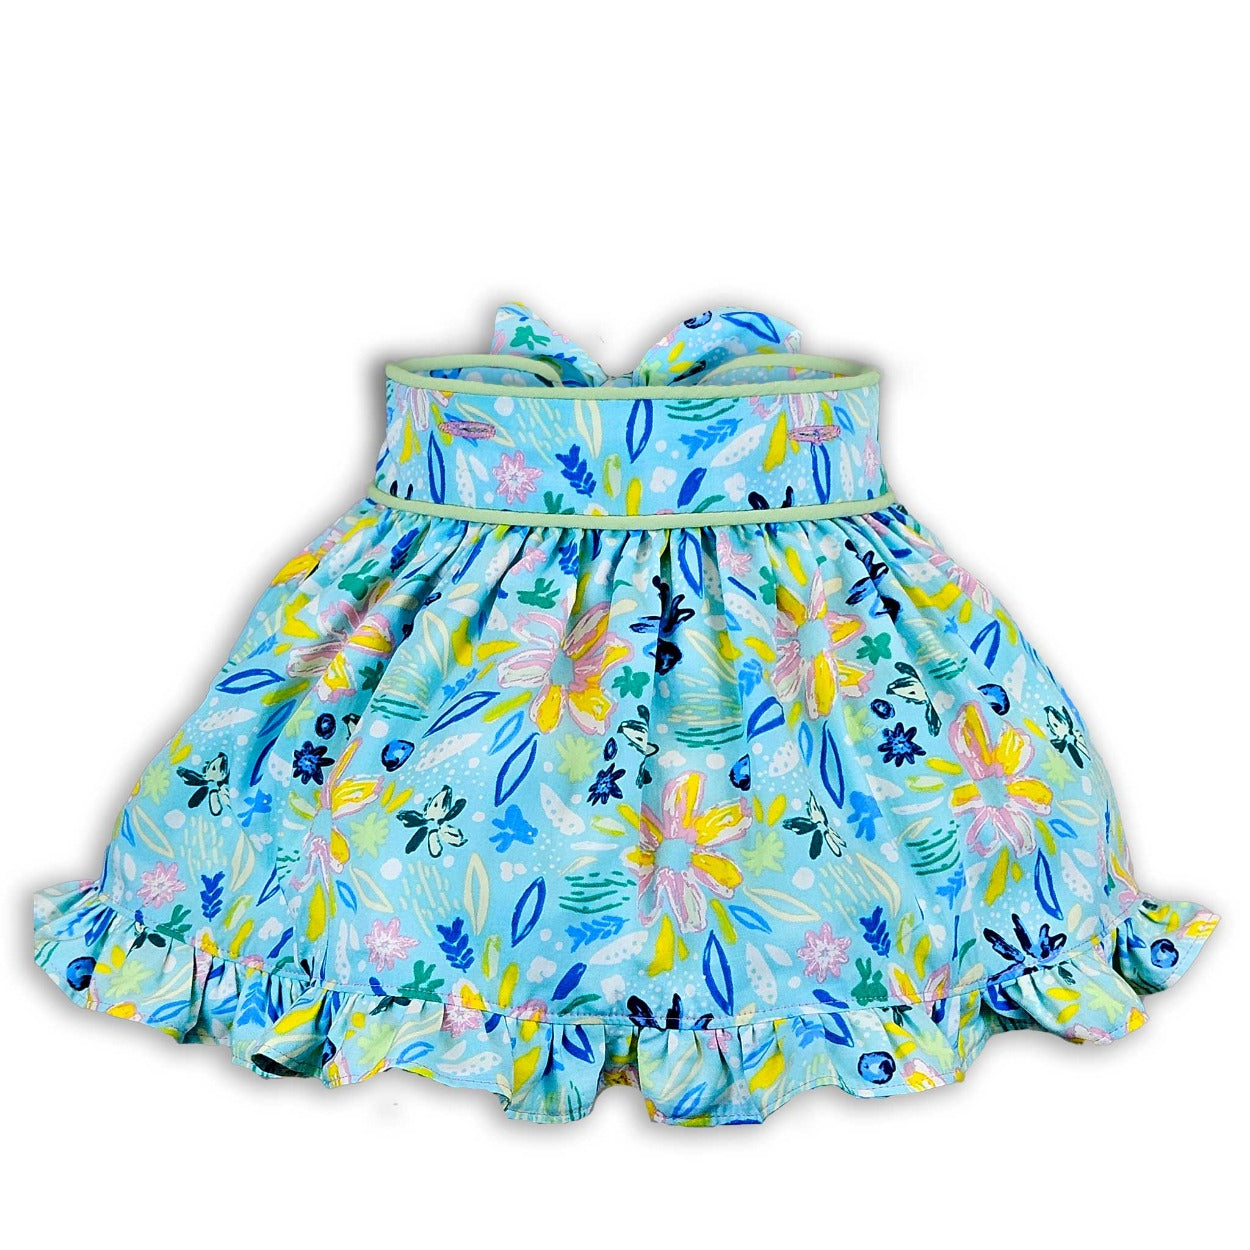 little girls skirts bows ruffles mint blue pink